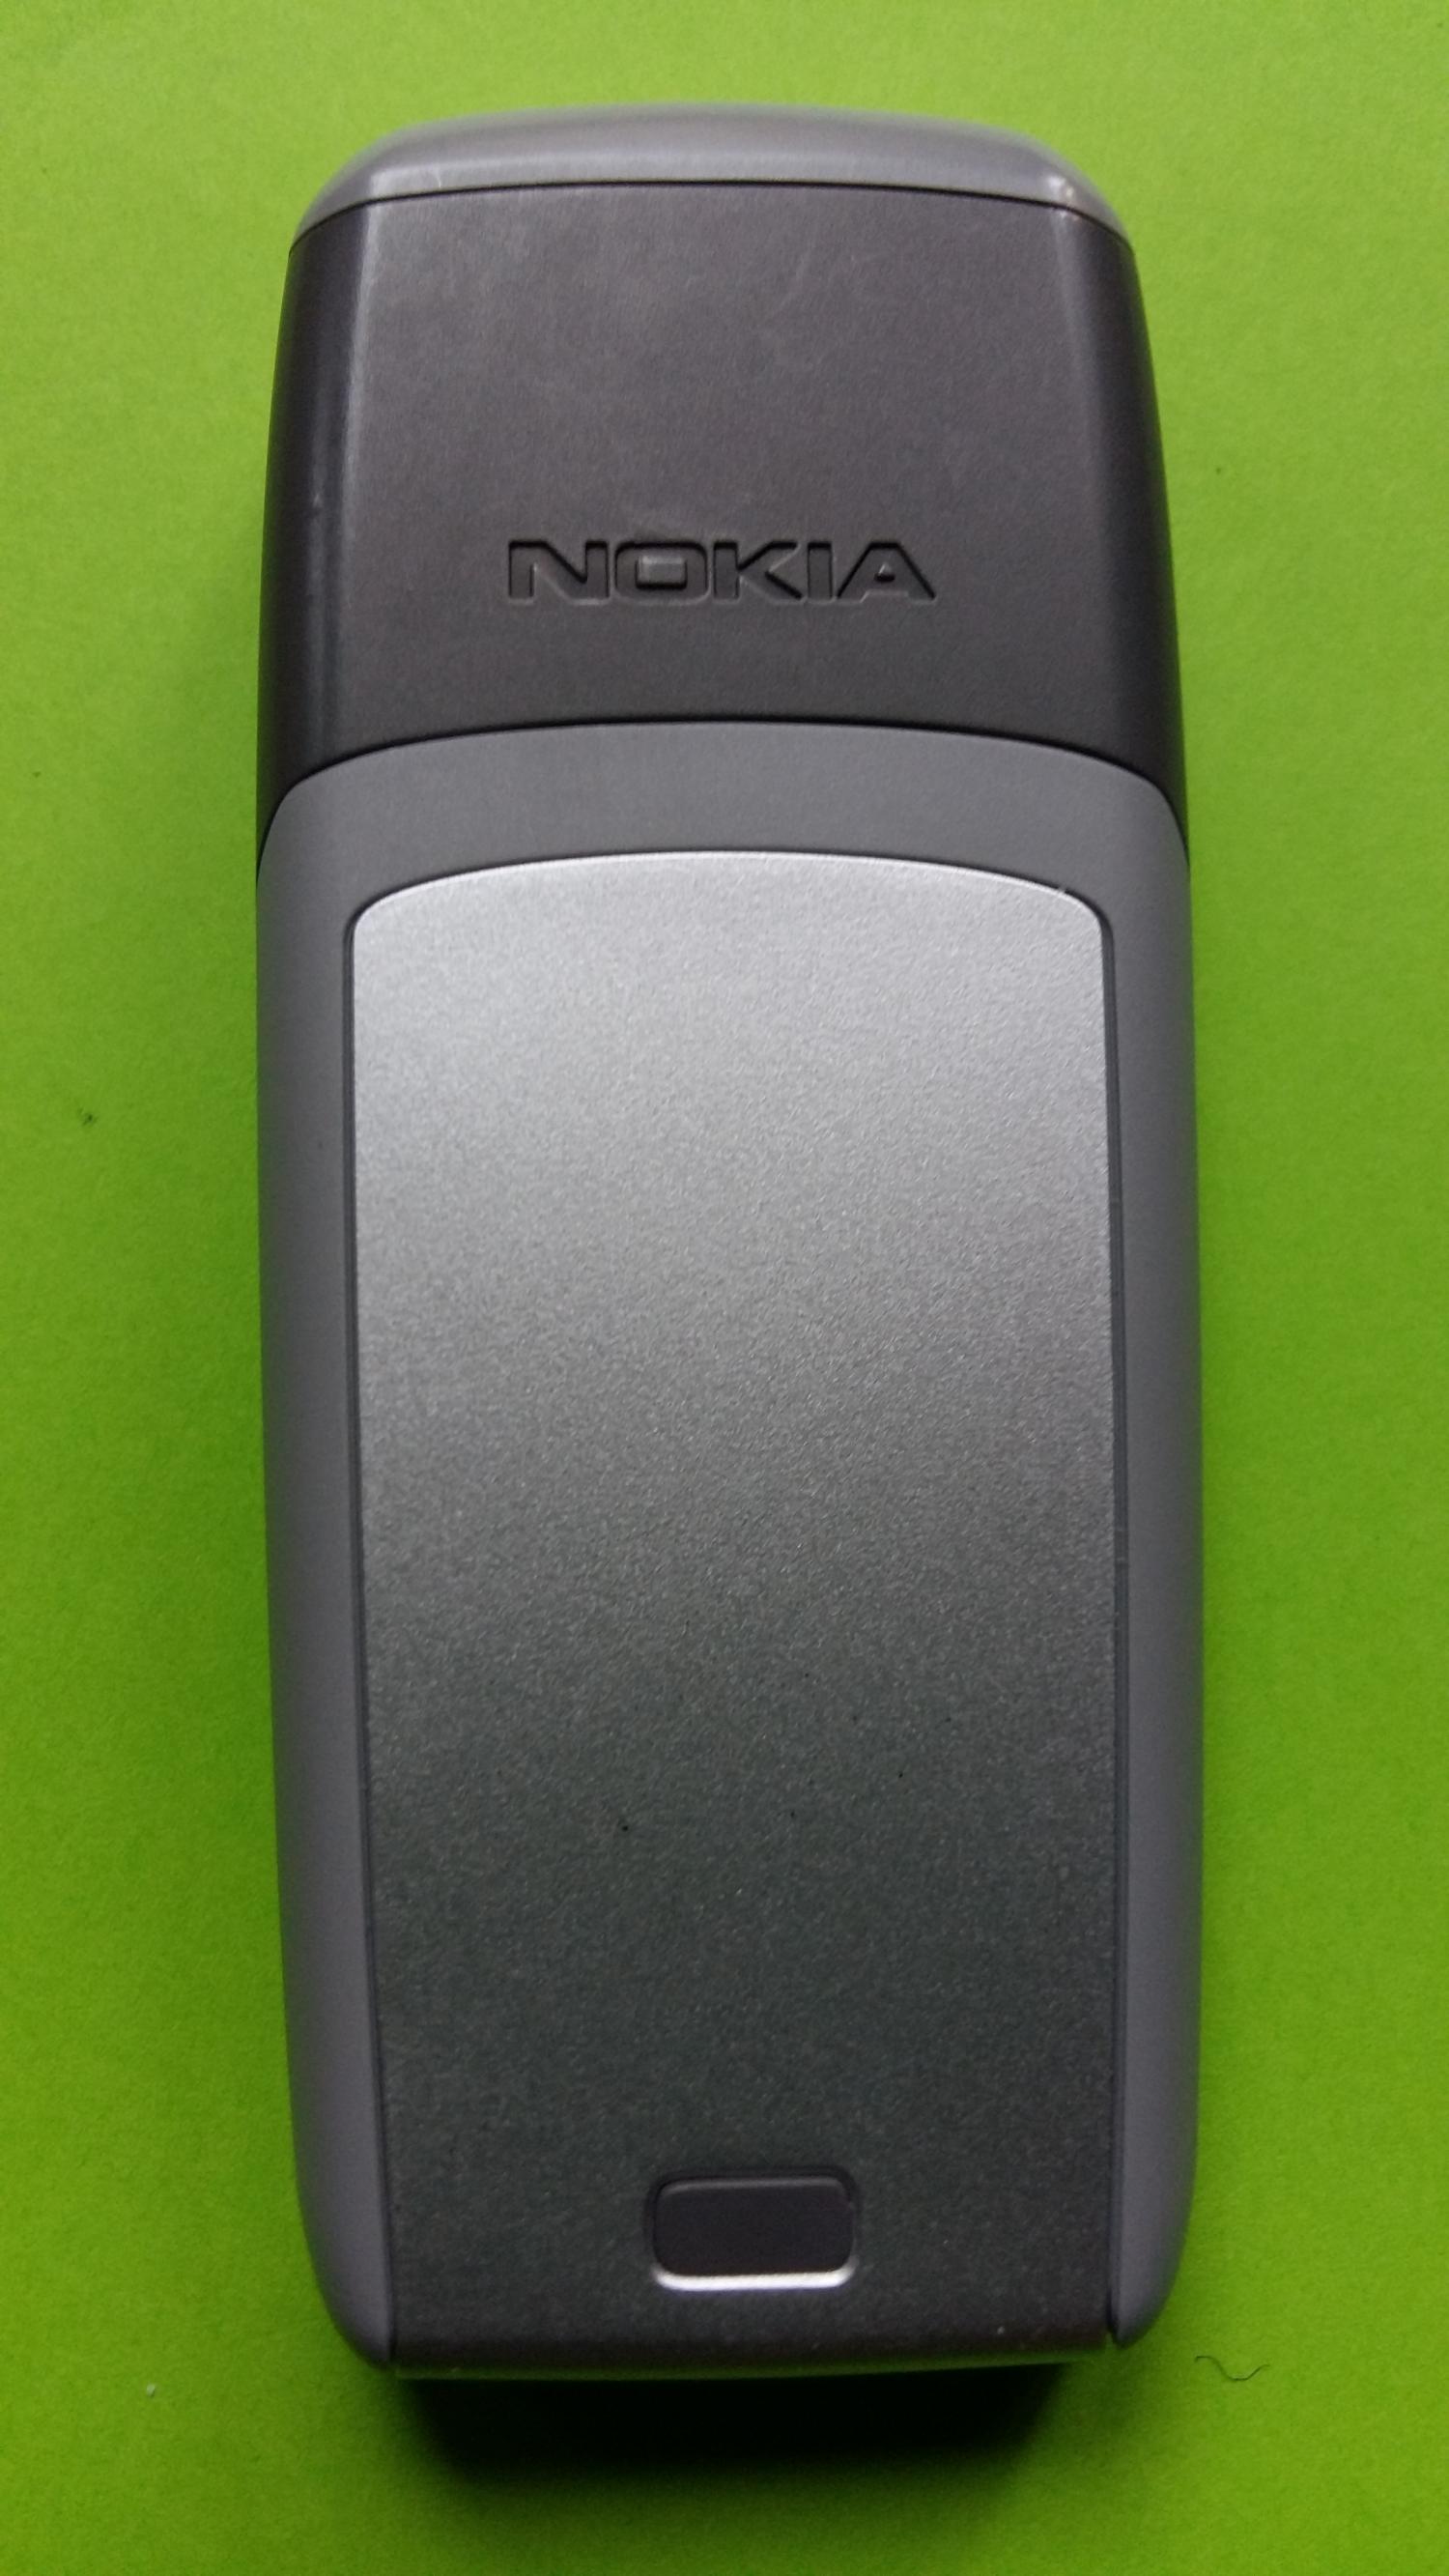 image-7300725-Nokia 1600 (7)2.jpg